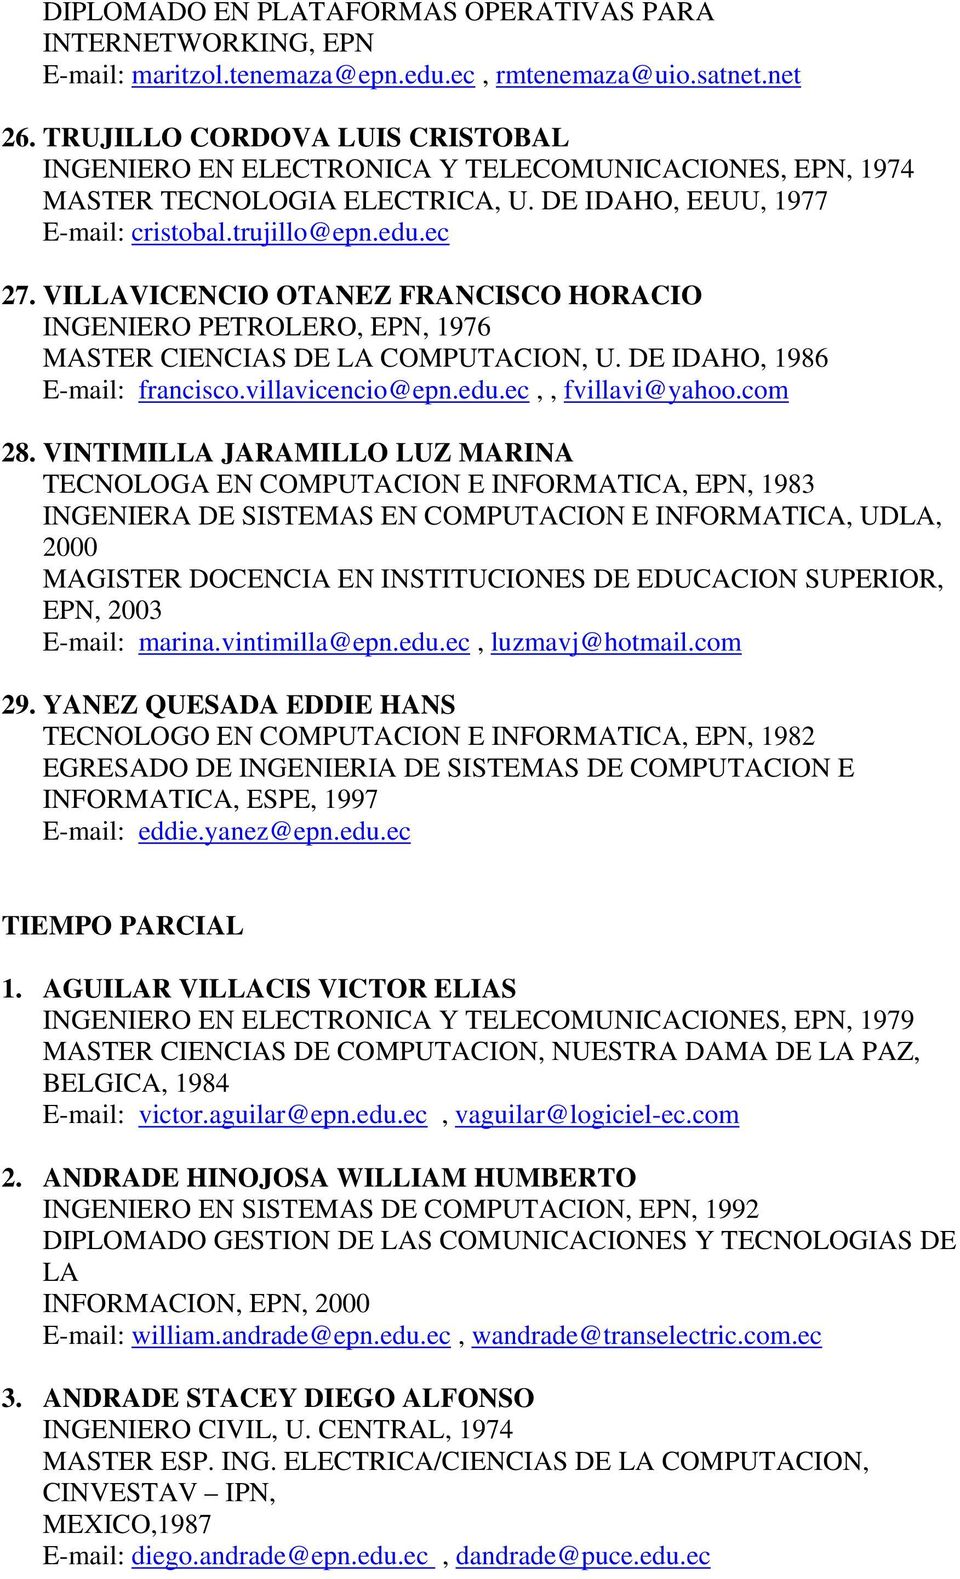 VILLAVICENCIO OTANEZ FRANCISCO HORACIO INGENIERO PETROLERO, EPN, 1976 MASTER CIENCIAS DE LA COMPUTACION, U. DE IDAHO, 1986 E-mail: francisco.villavicencio@epn.edu.ec,, fvillavi@yahoo.com 28.